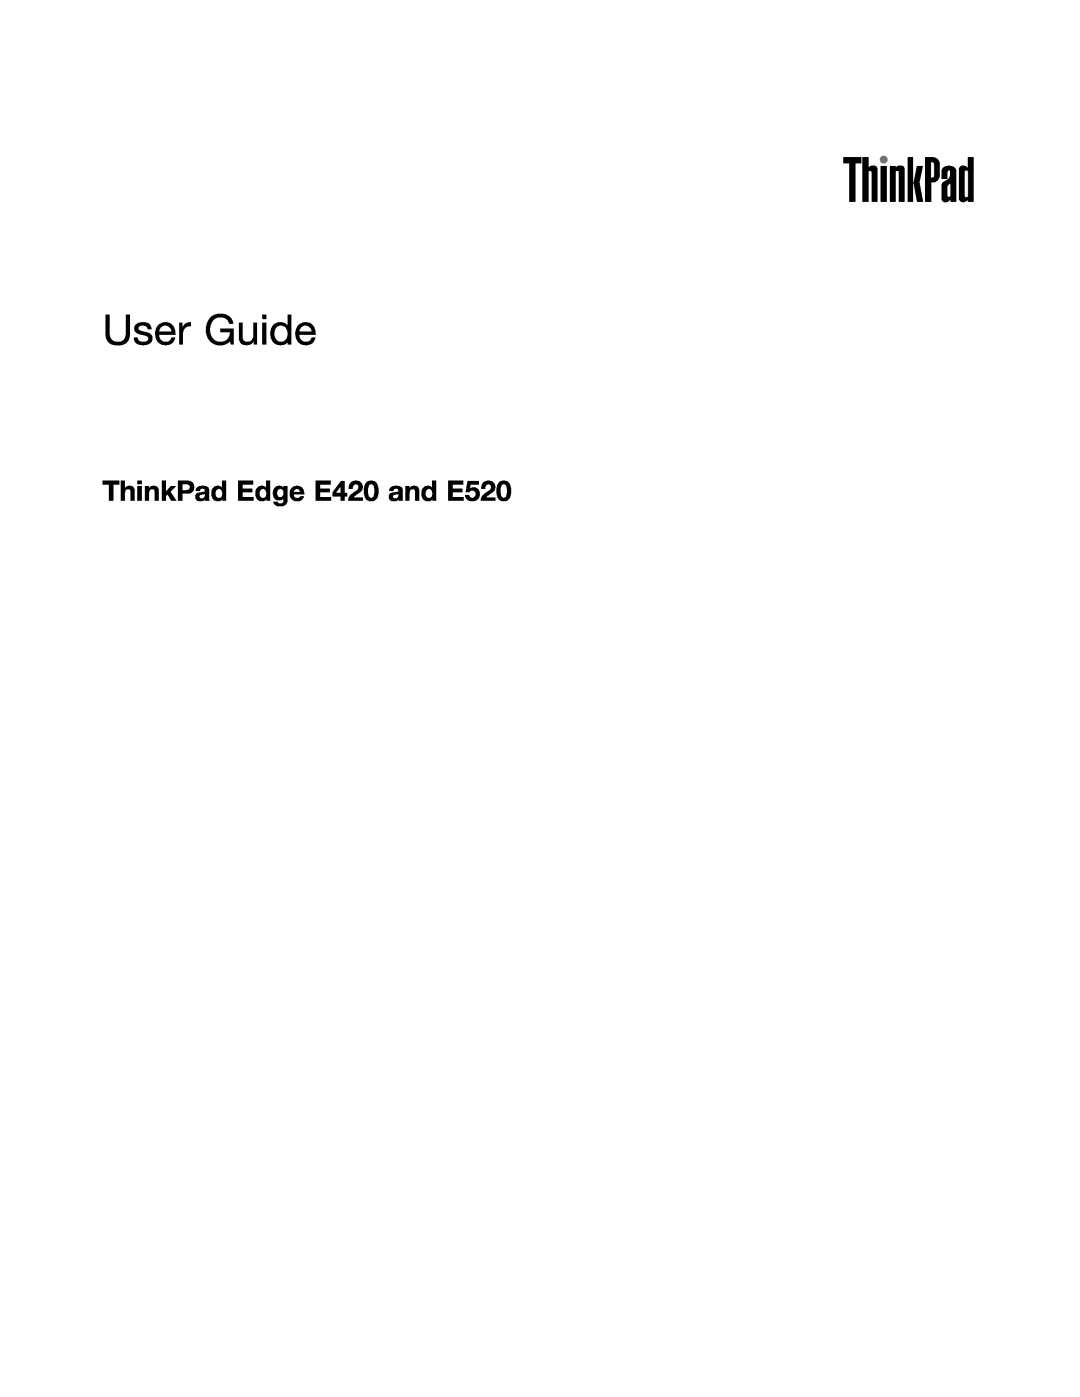 Lenovo 114155U manual ThinkPad Edge E420 and E520, User Guide 